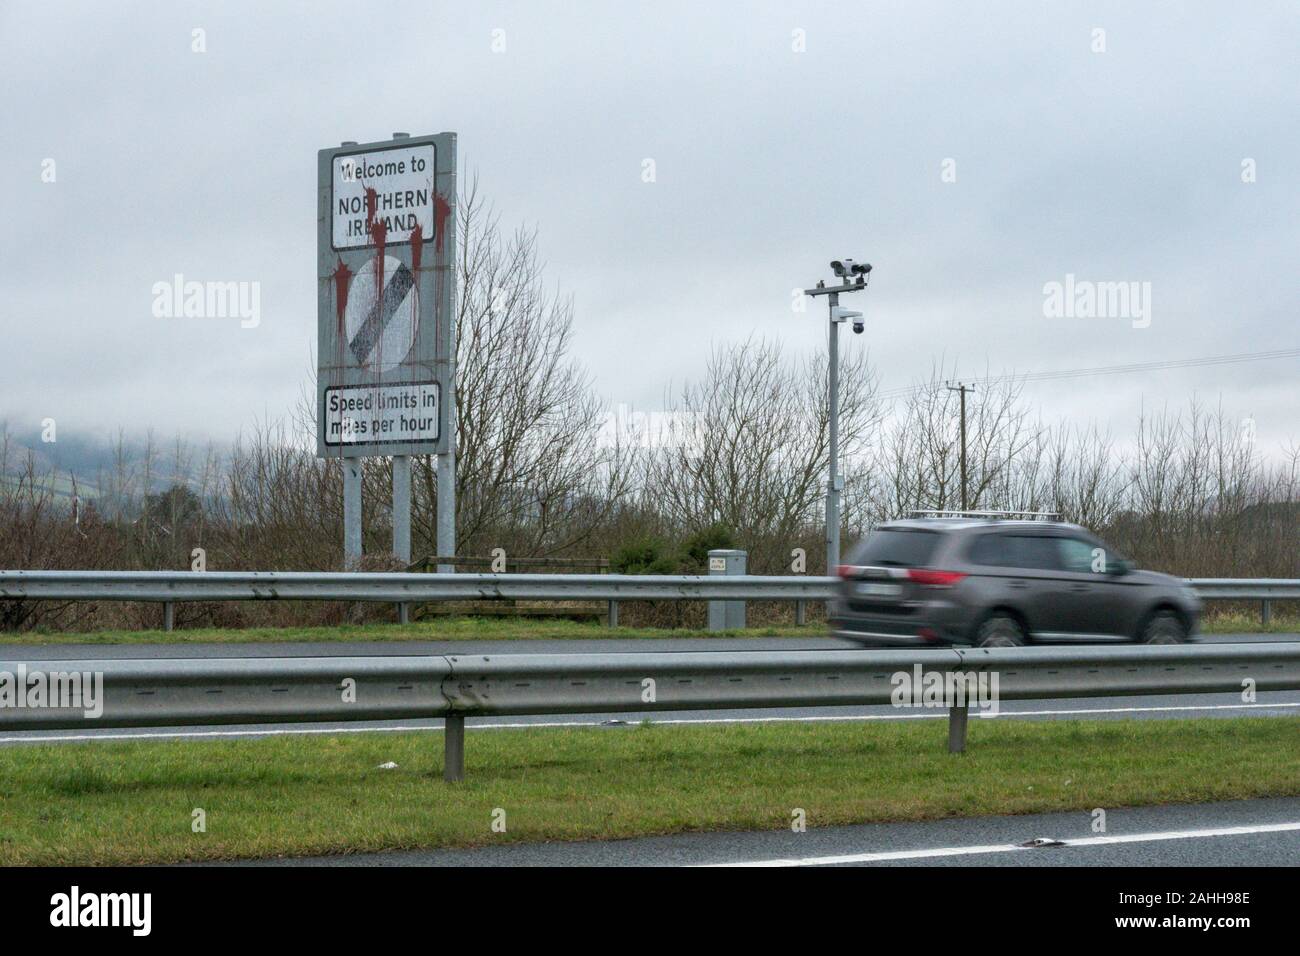 Fehler in der Republik Irland und Nordirland Grenzziehung Zeichen, daran zu erinnern, dass alle Autofahrer Drehzahlvorzeichen jetzt in mph sind. Stockfoto